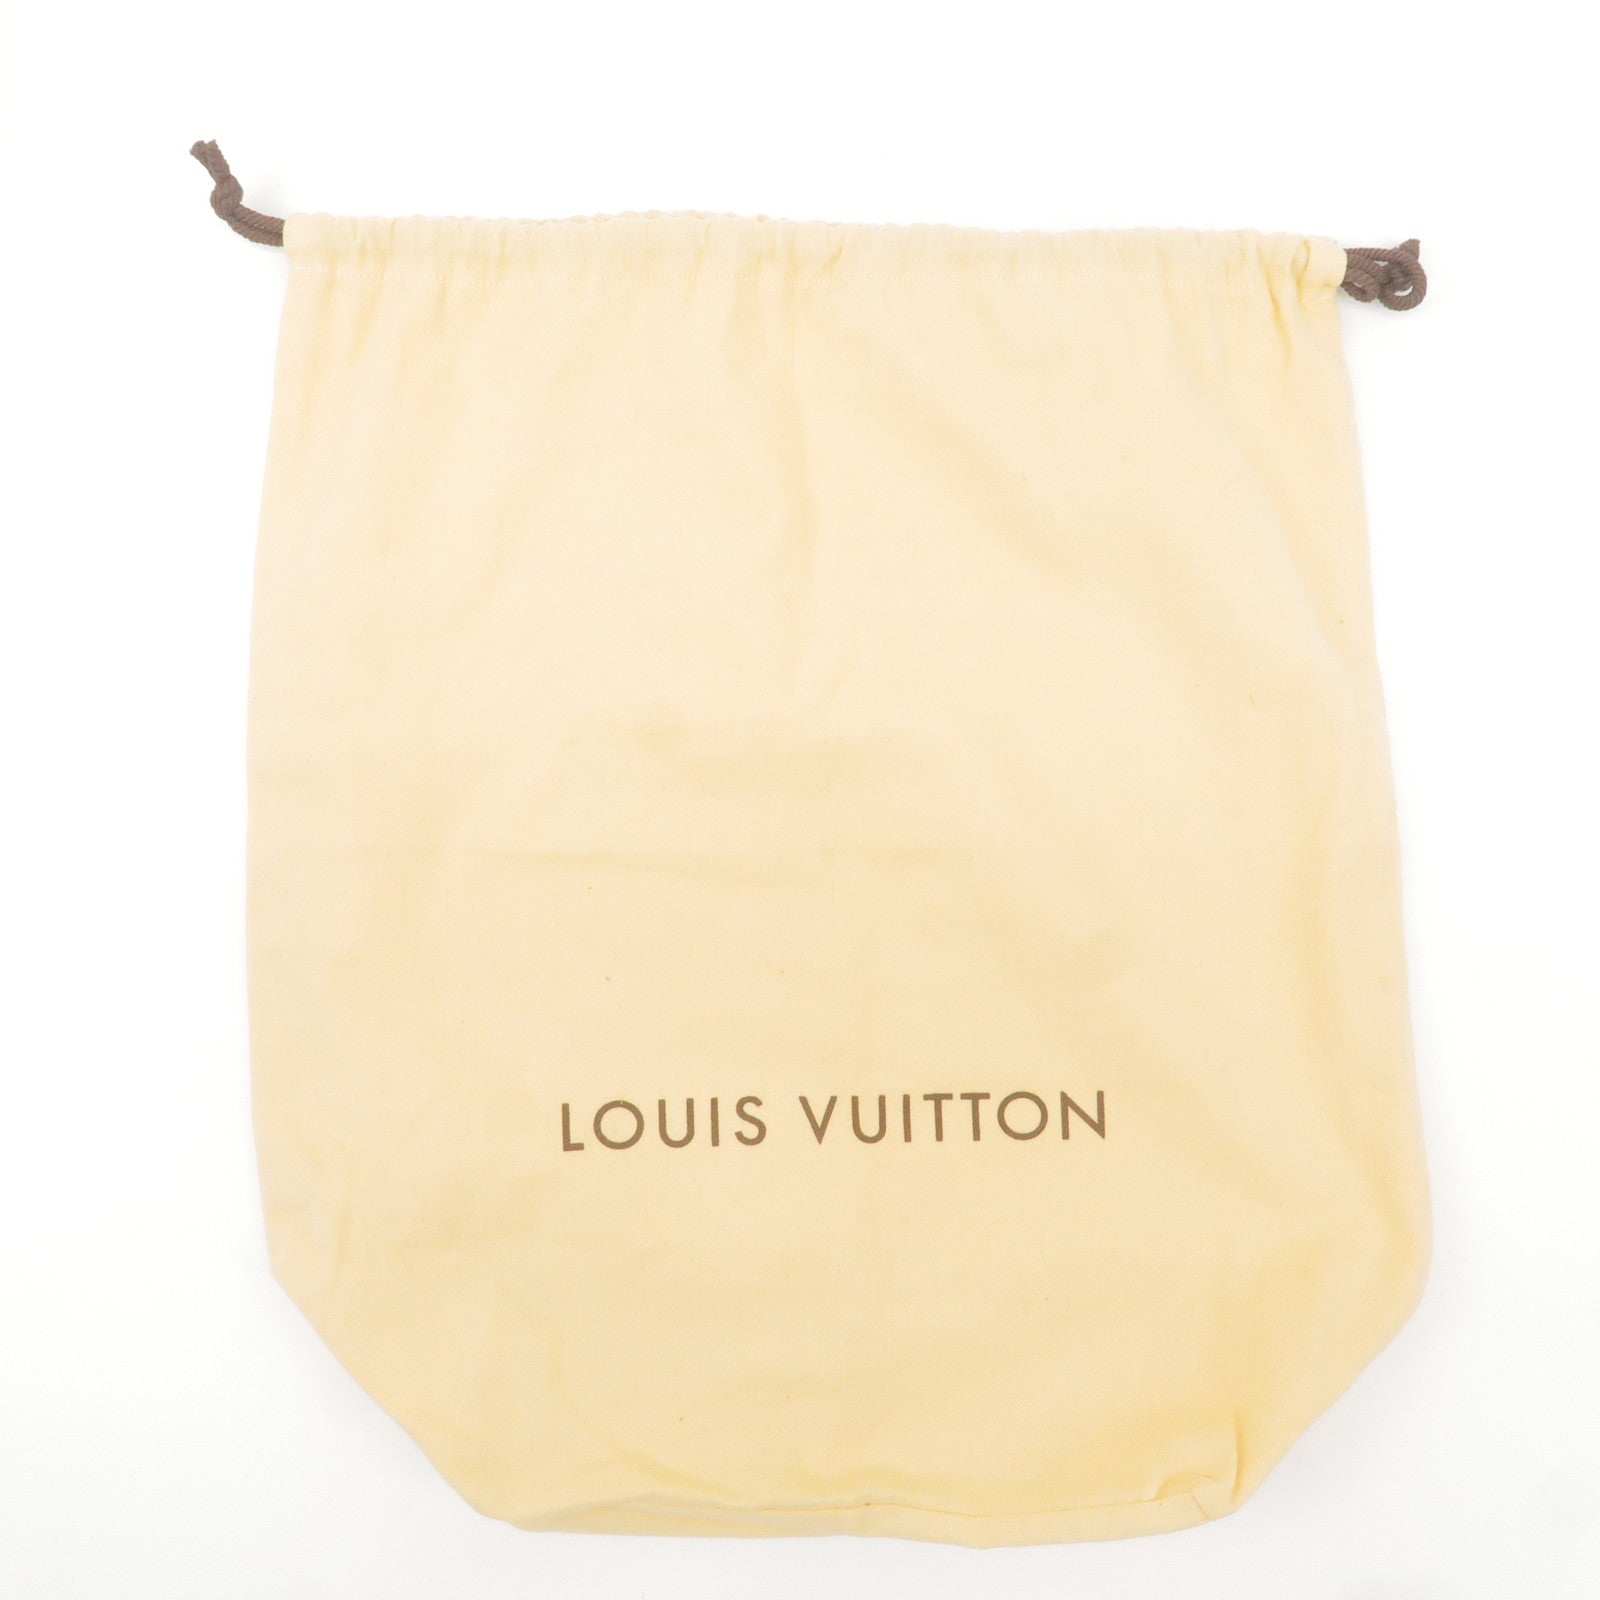 Louis-Vuitton-Set-of-15-Dust-Bag-Storage-Bag-Flap-Style